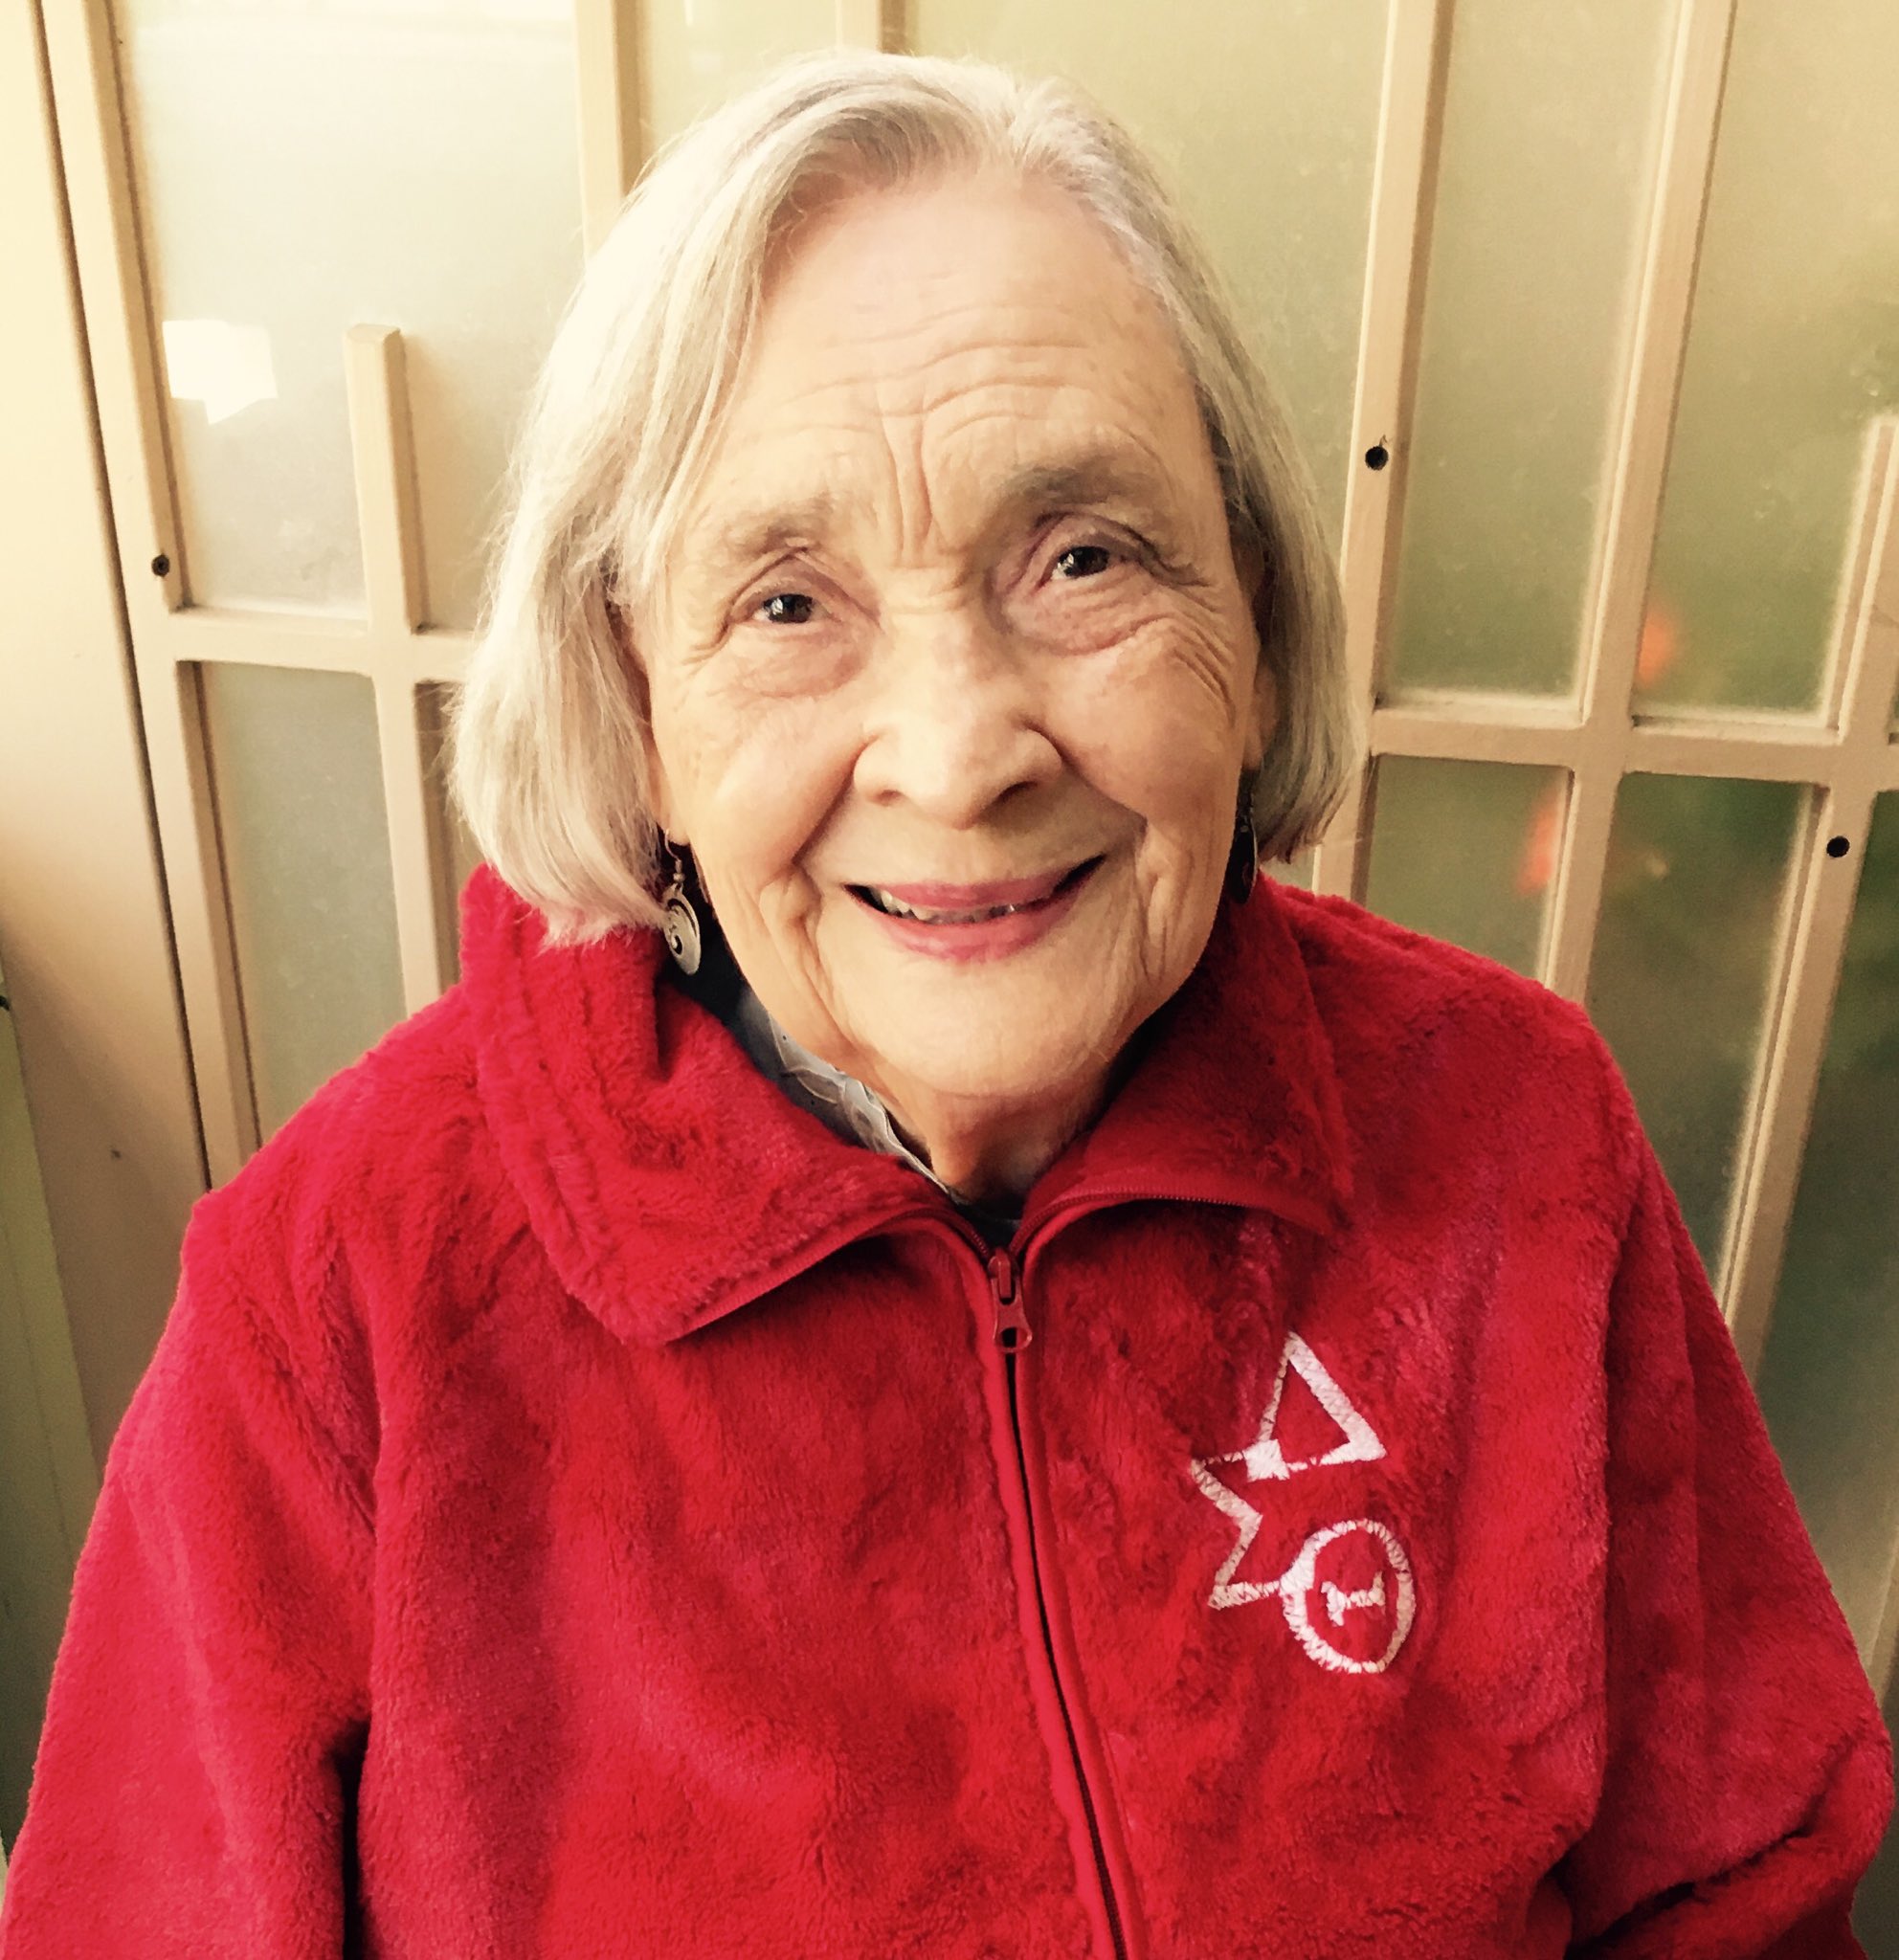 Ben Jealous on Twitter: "My grandma turns 102 years old ...